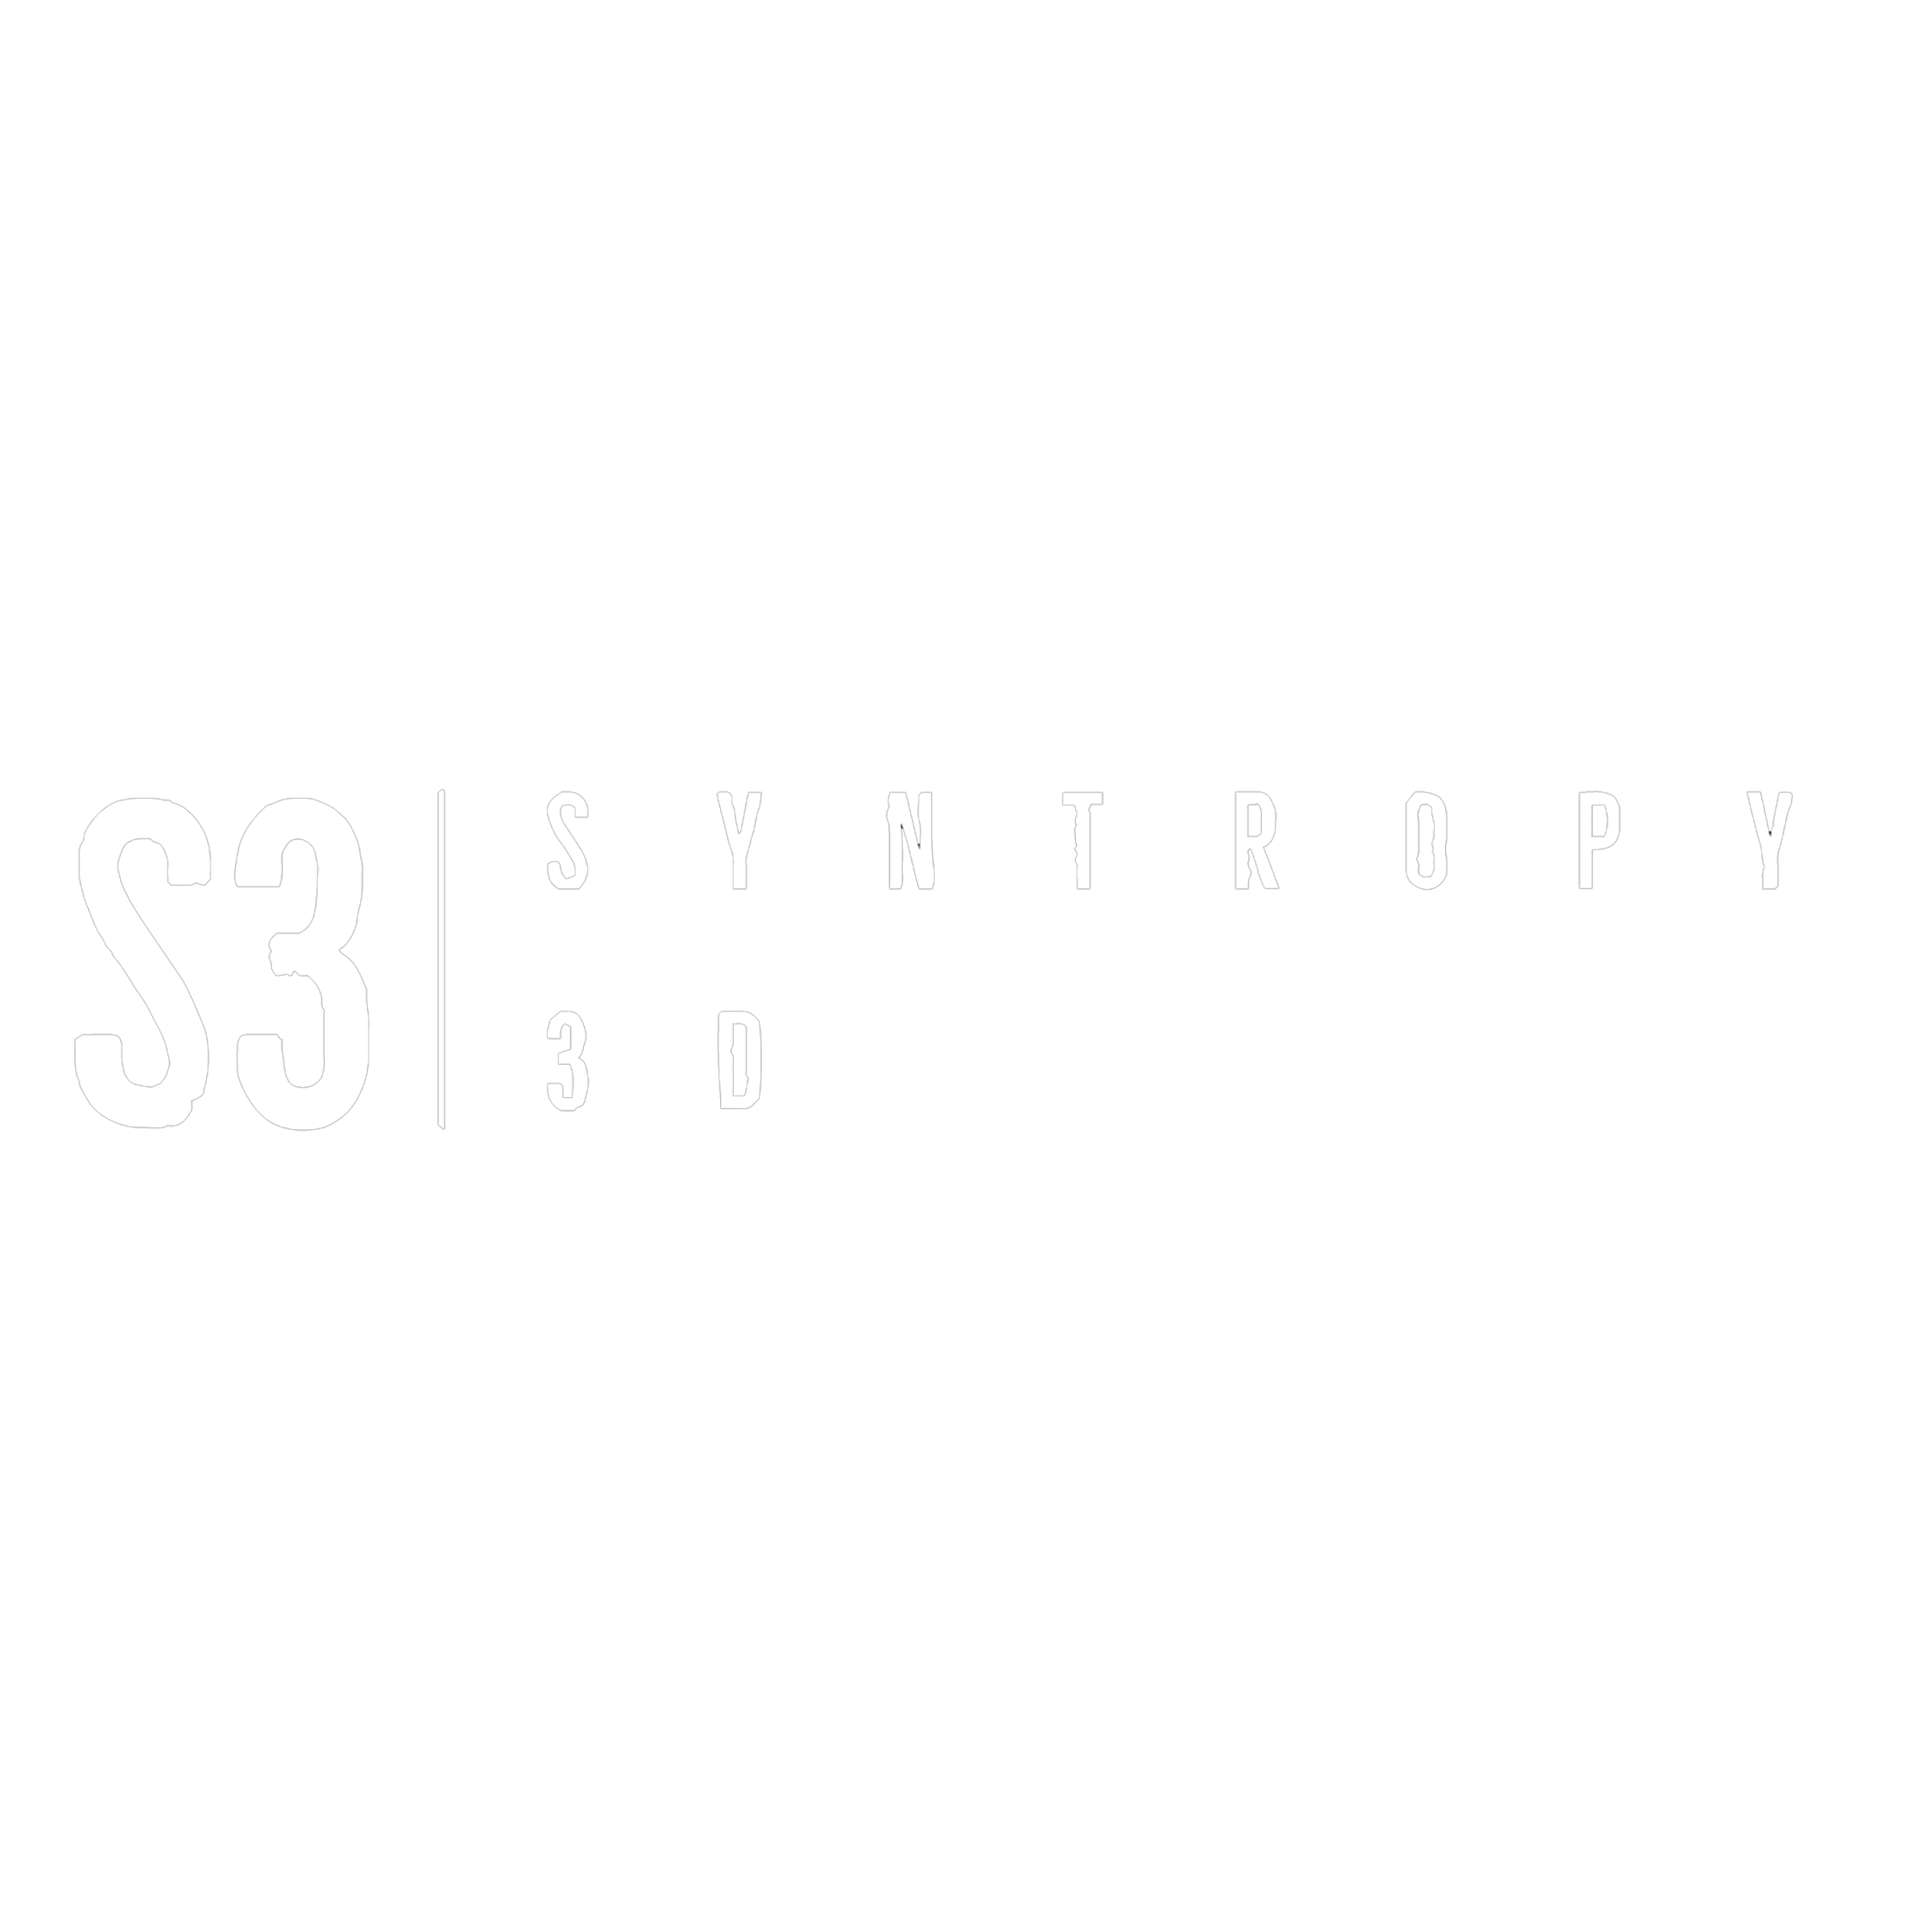 Snytropy 3D